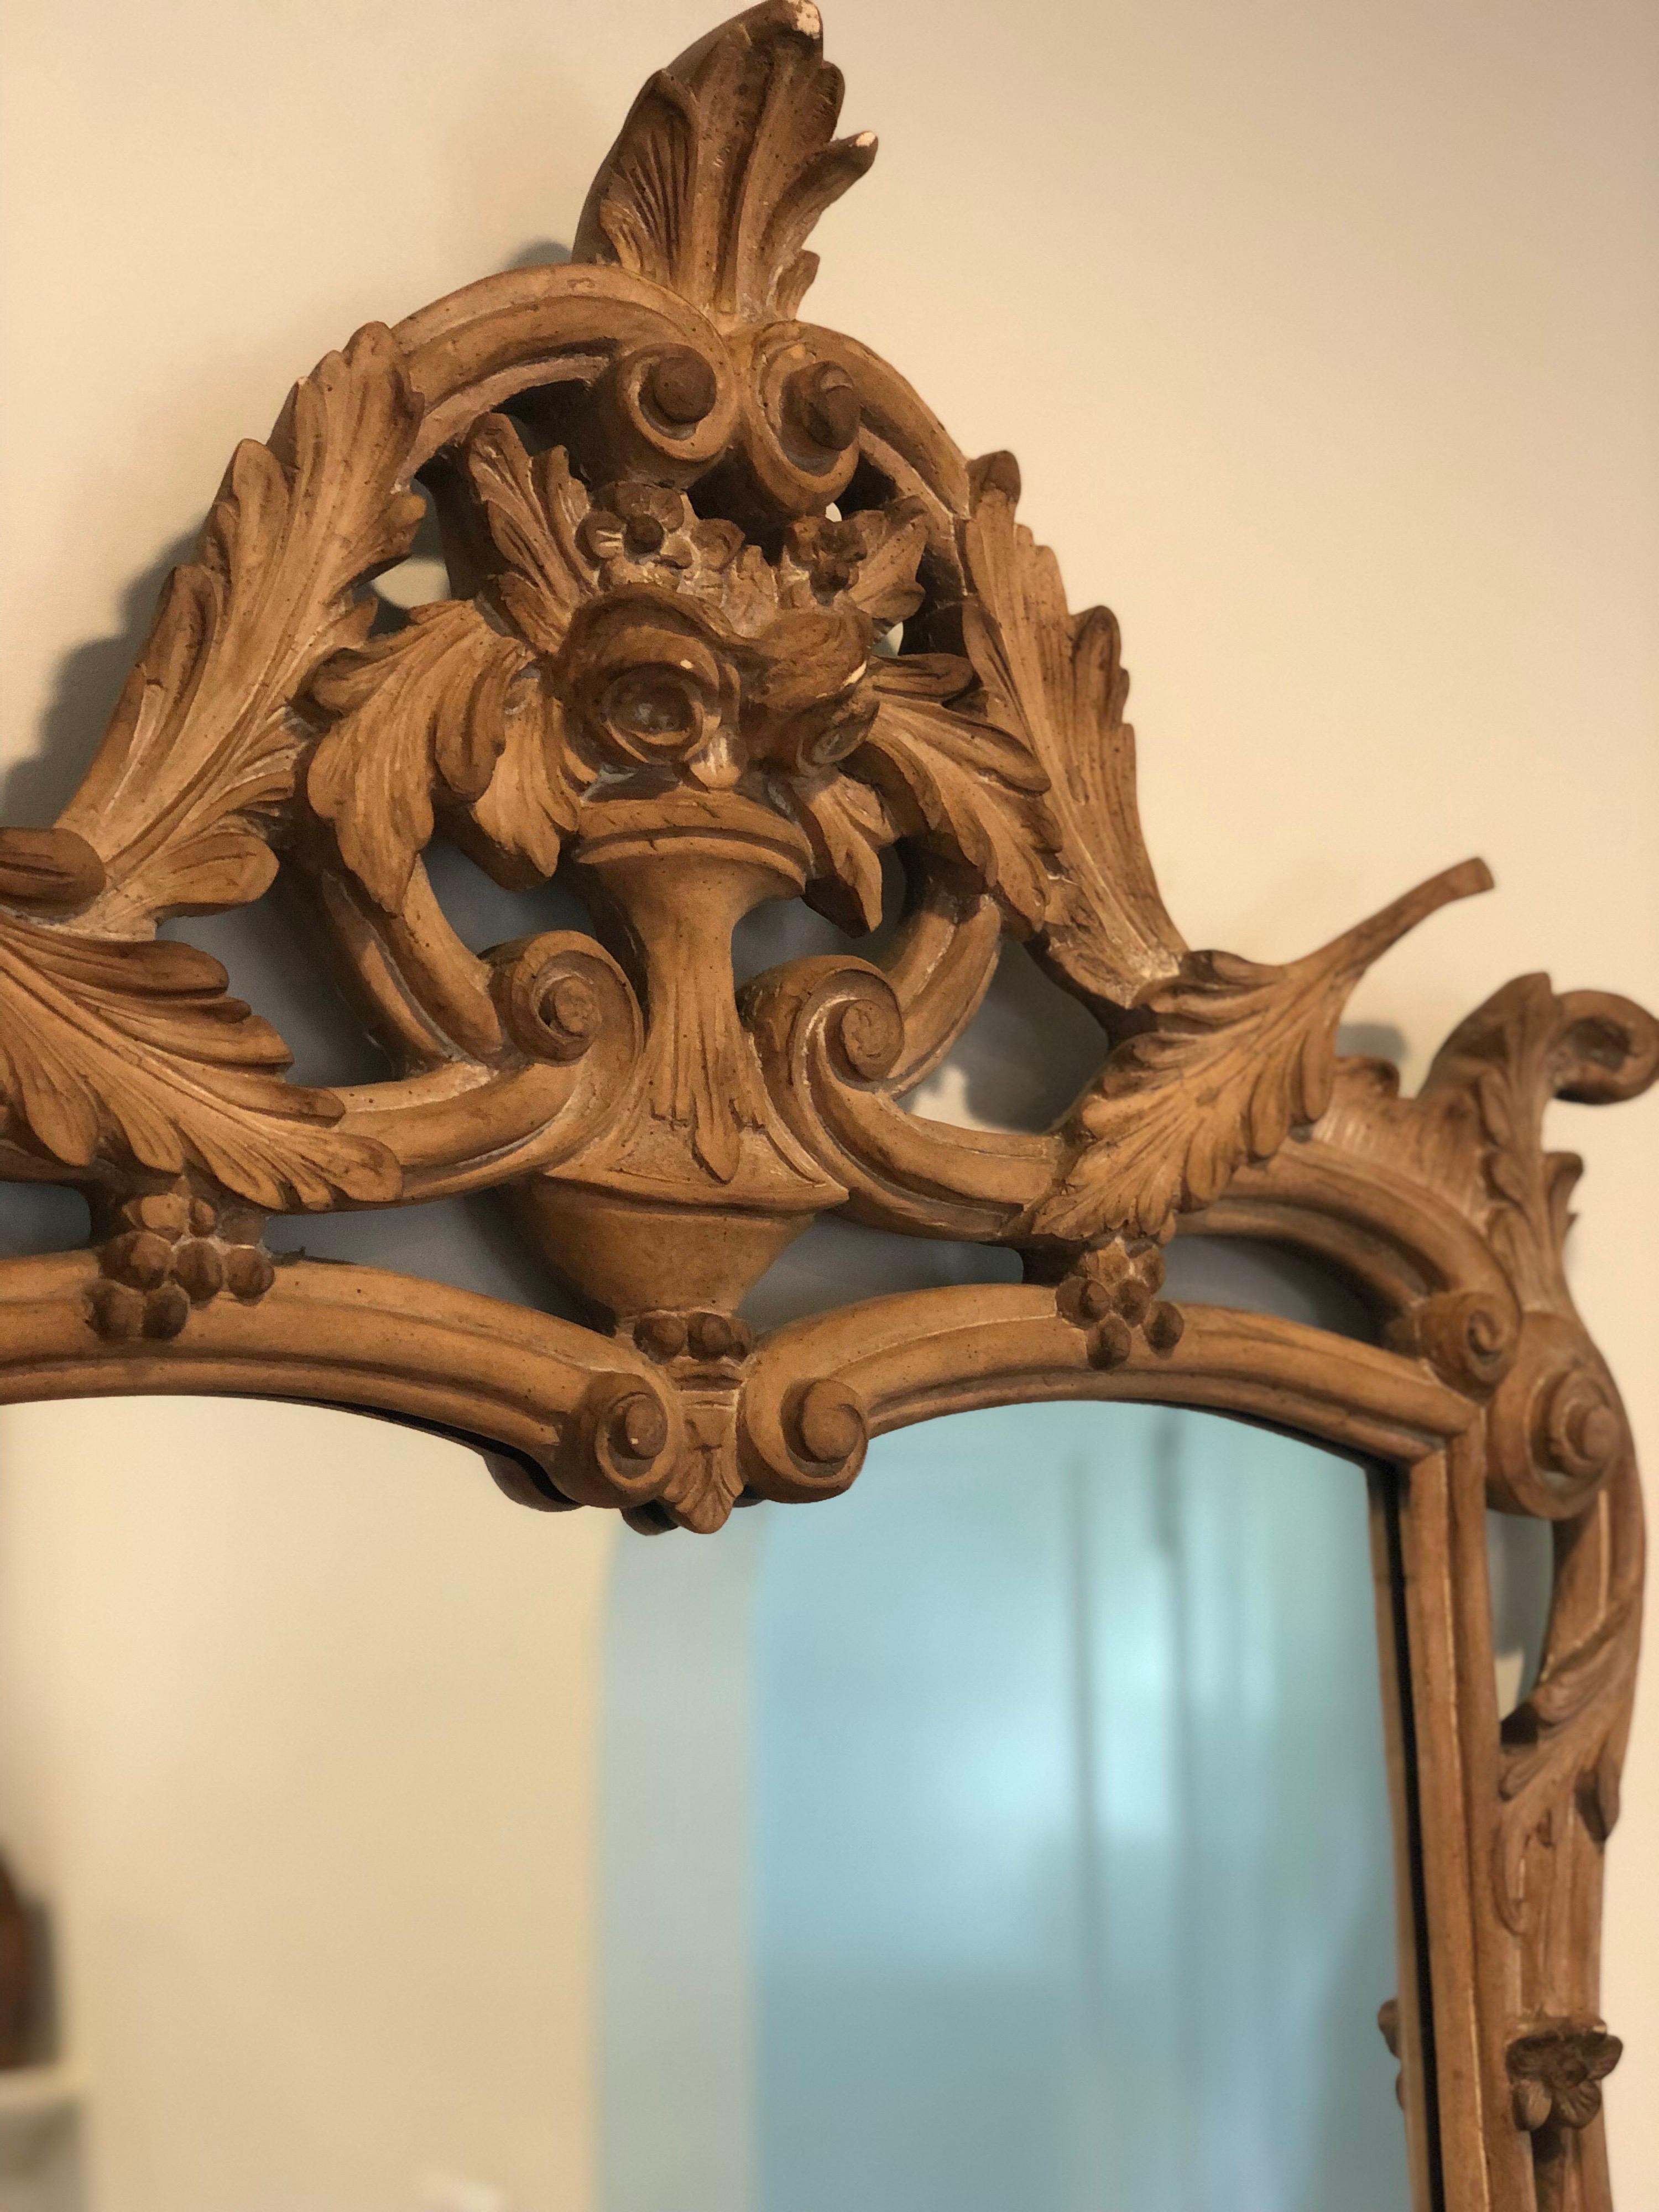 Vintage-Spiegel im französischen Stil von Mirror Fair. 
Handgeschnitzt mit. Blättern und Blumen in einer Urne. 

Rohes, unbehandeltes Holz mit natürlicher Patina verleiht ihm ein modernes Flair.